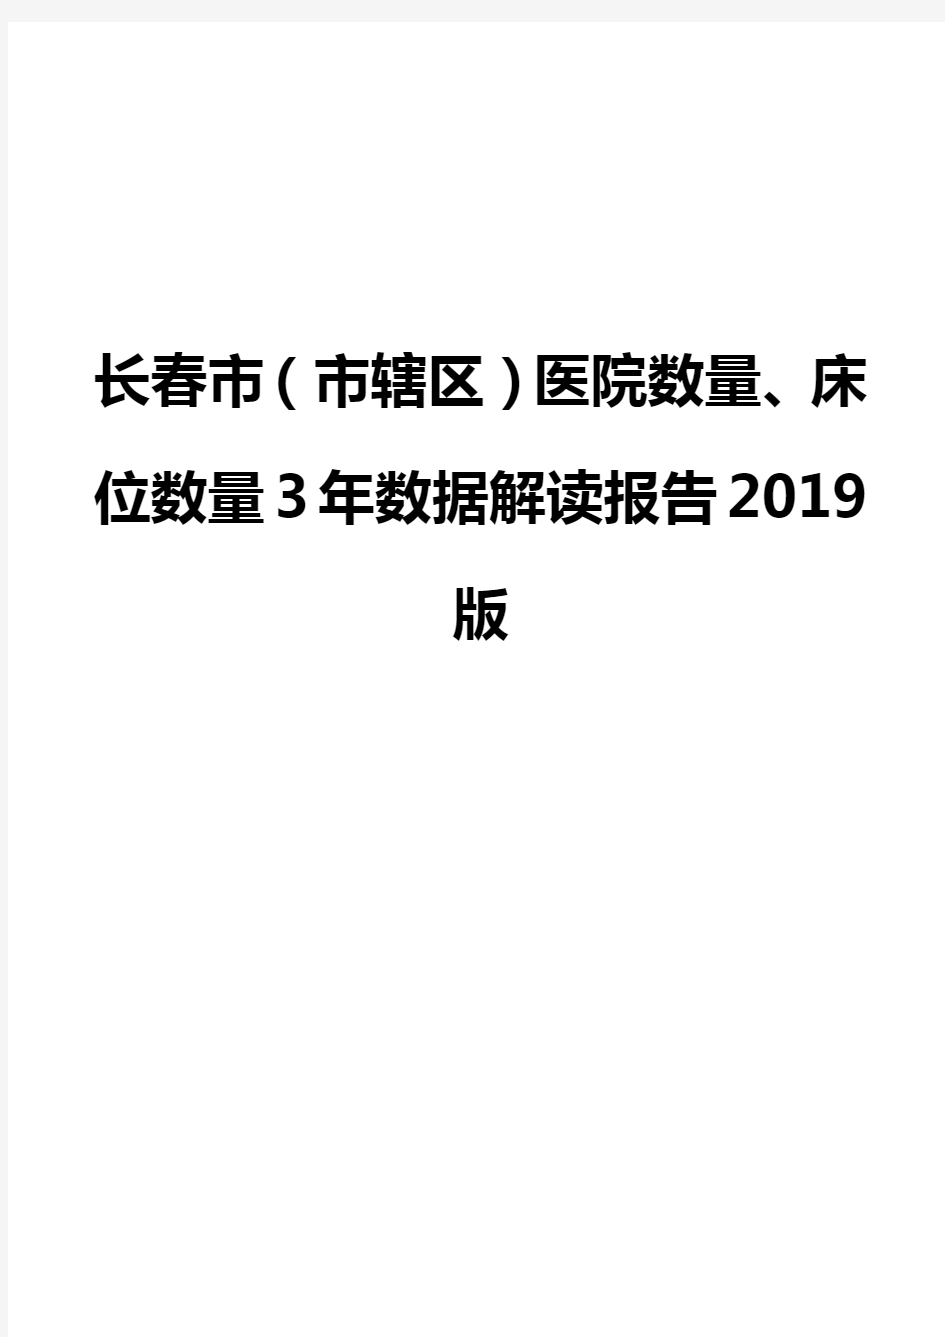 长春市(市辖区)医院数量、床位数量3年数据解读报告2019版